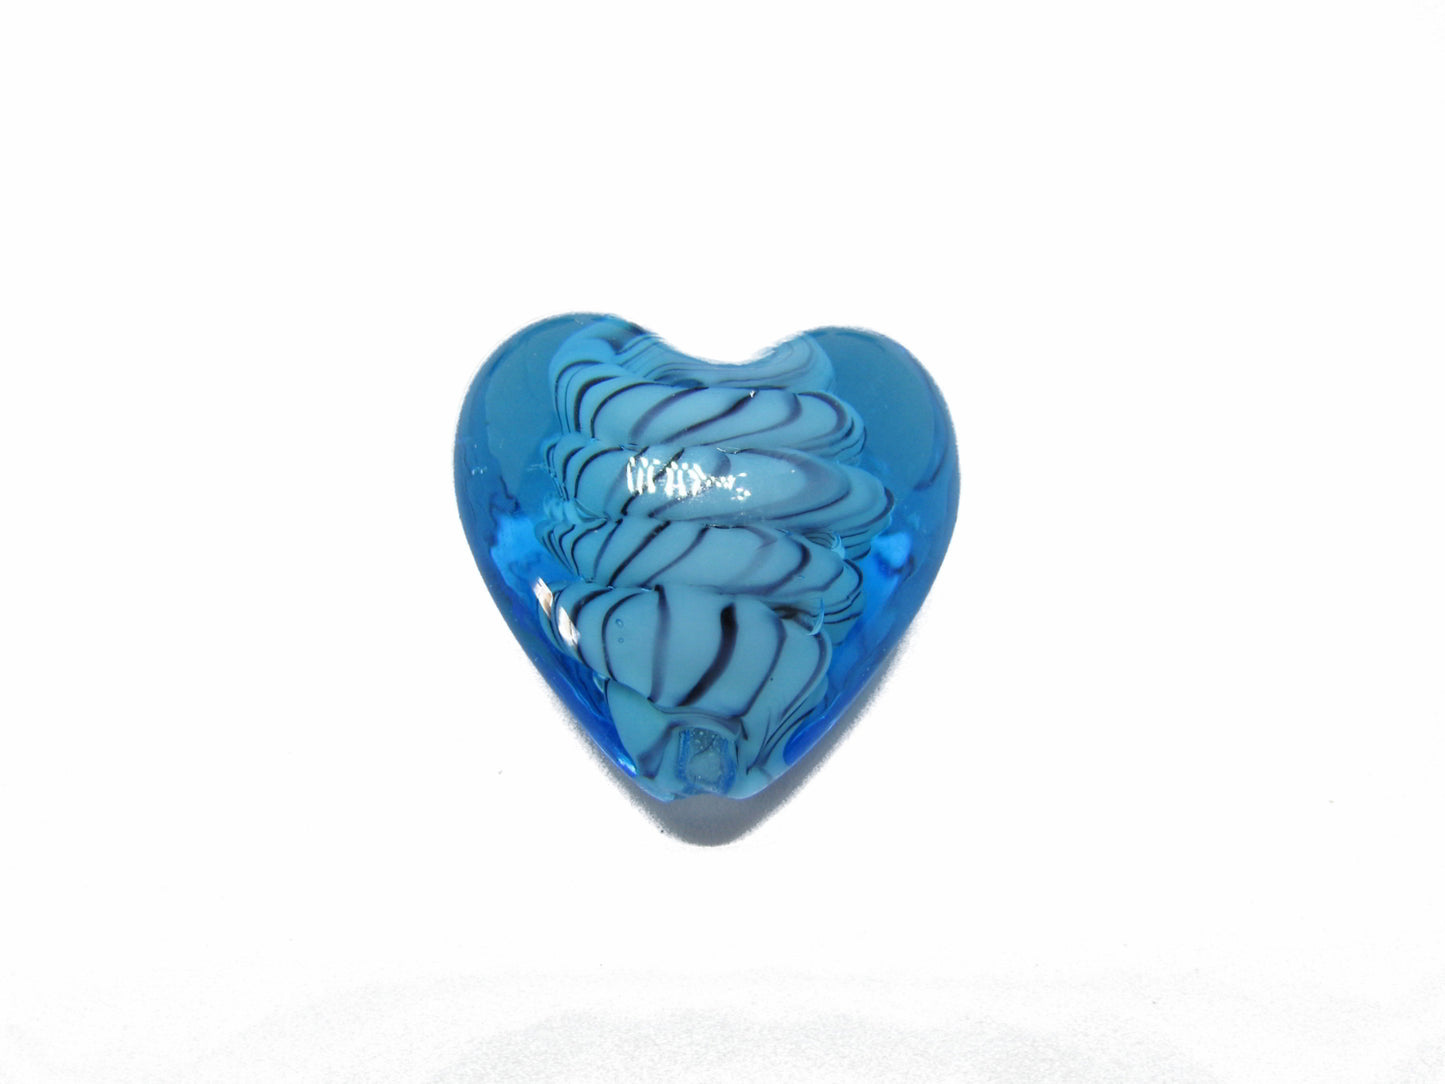 Glasperle Herz groß hellblau, 2,8cm, Schmuck und Perllen basteln, Charms basteln